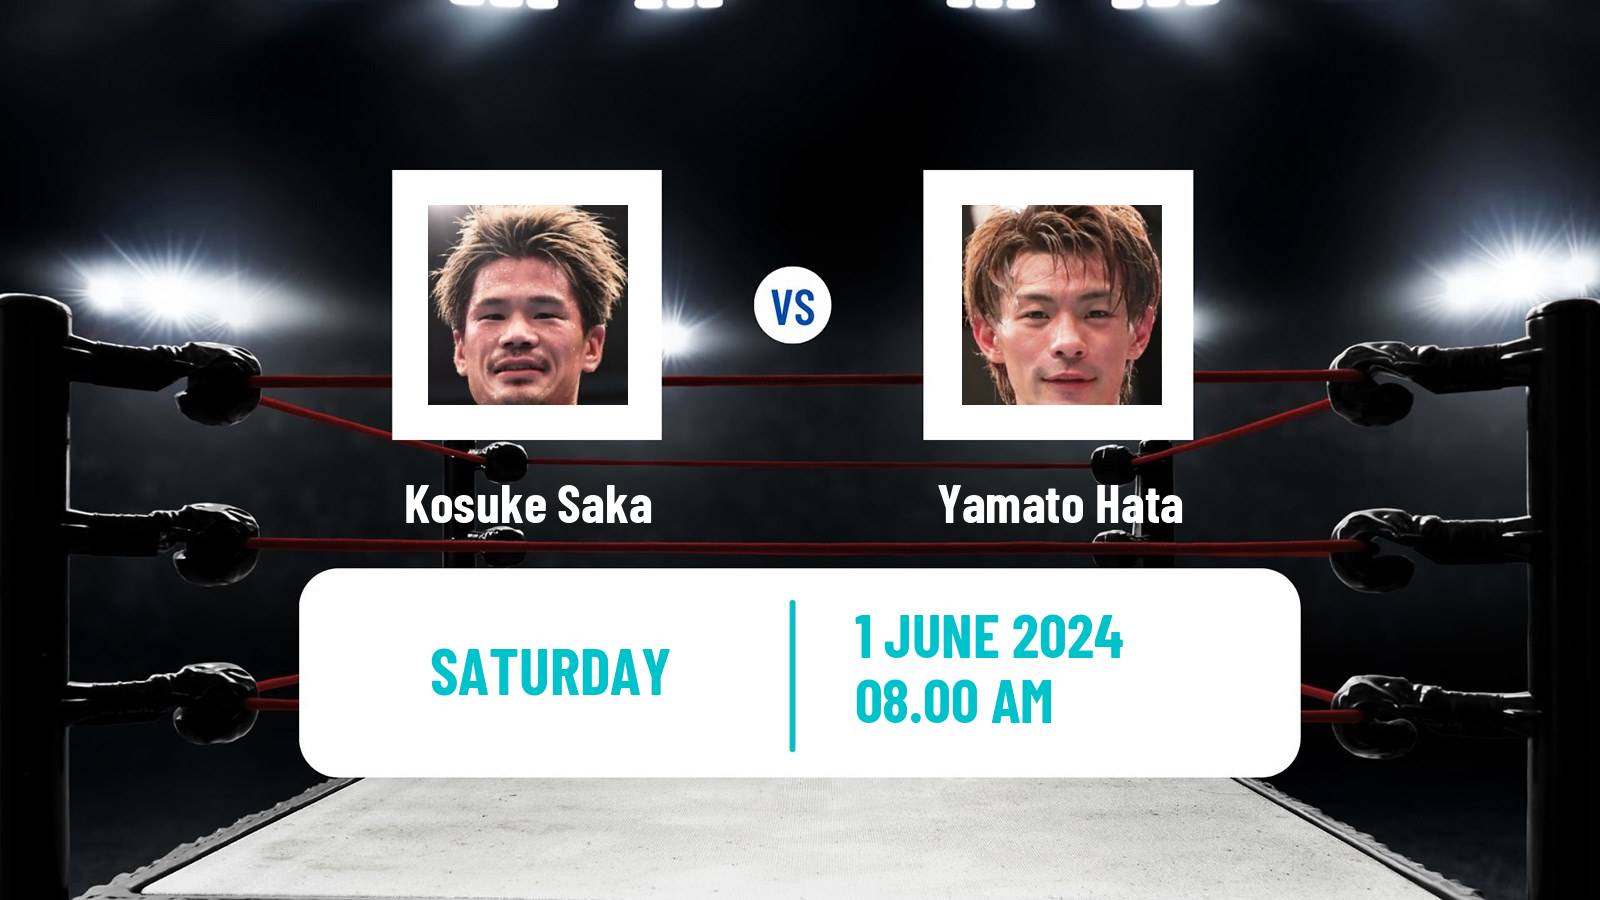 Boxing Super Featherweight Opbf Title Men Kosuke Saka - Yamato Hata